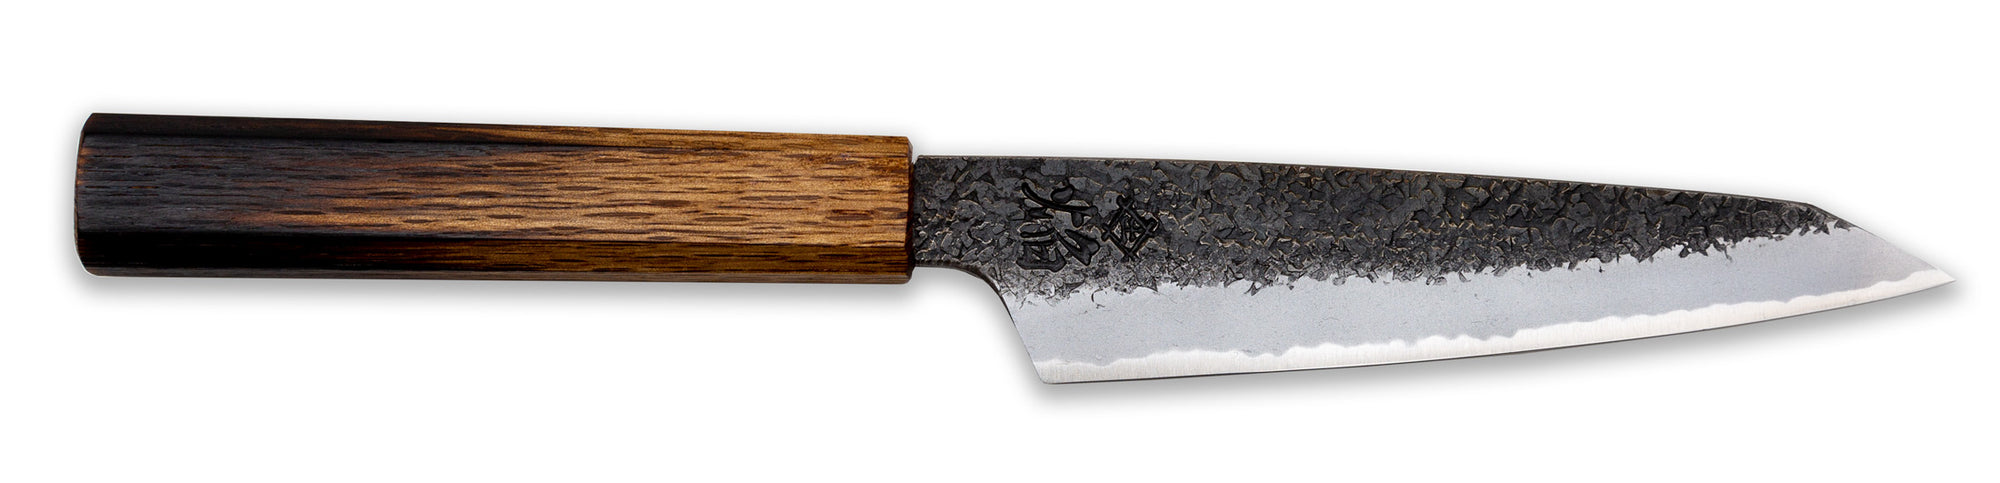 Sakai Takayuki Homura Guren Petty Knife 150mm Canada